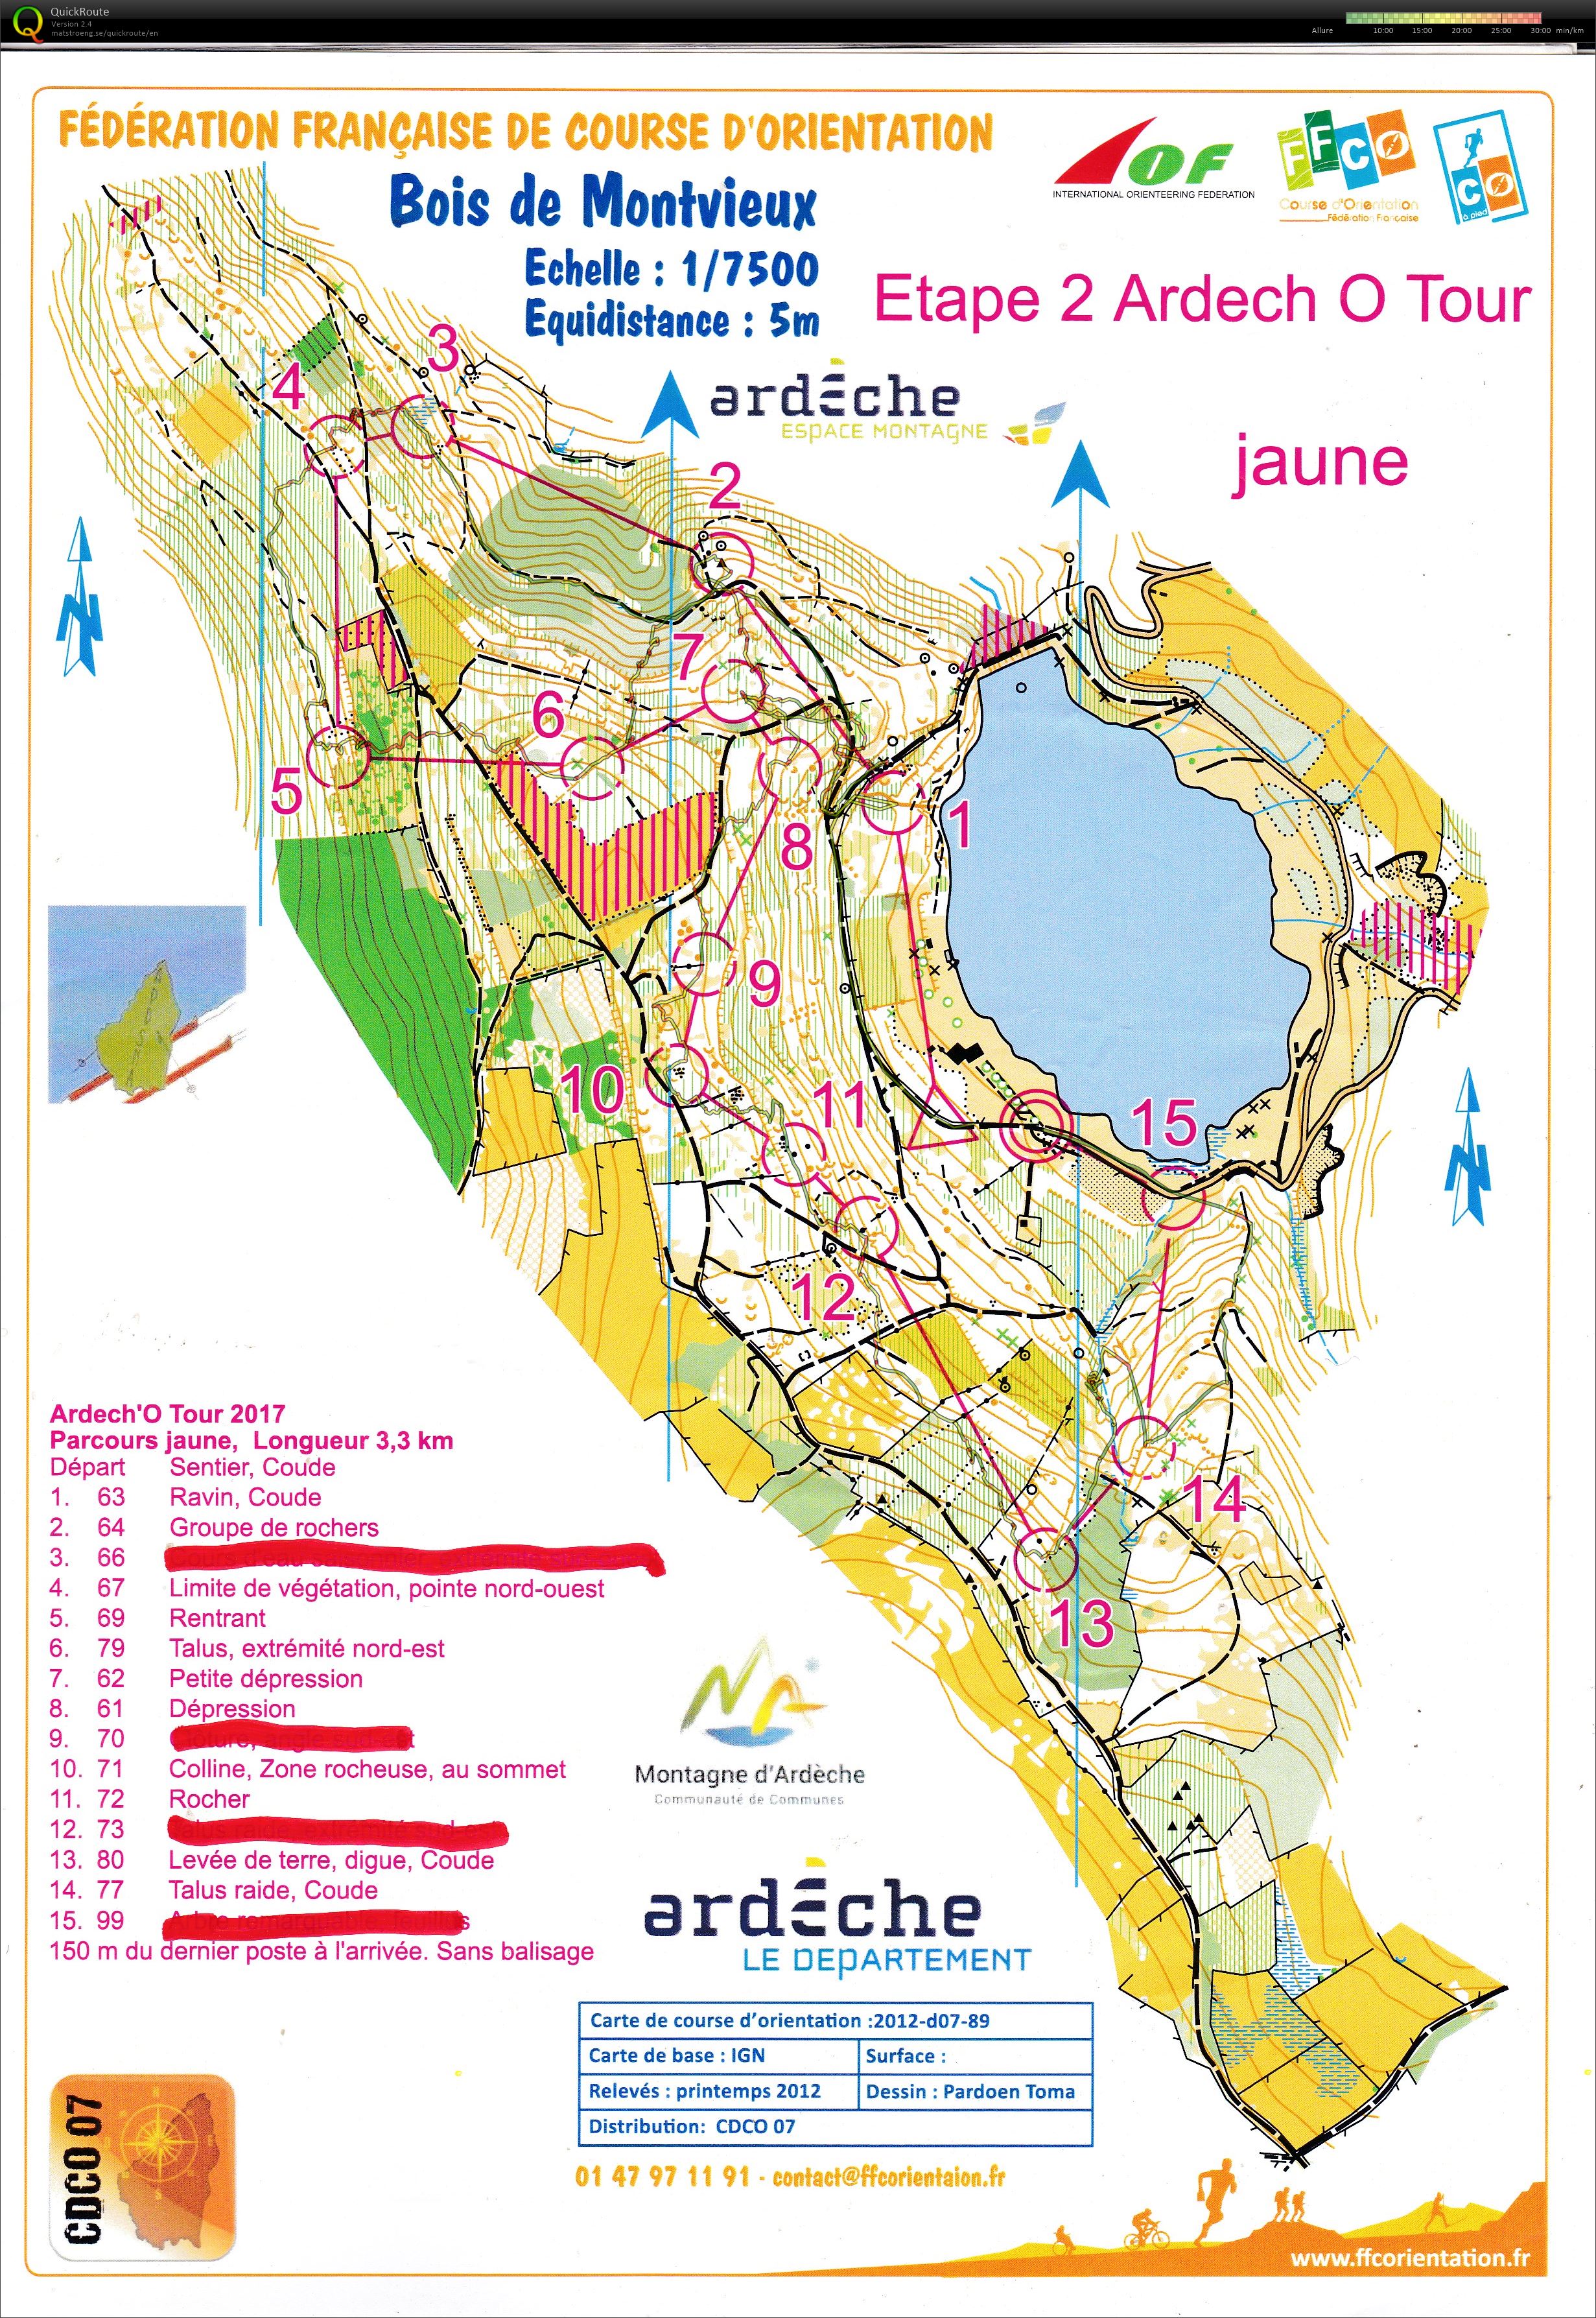 Ardèche'O Tour - Coucouron (2019-07-27)